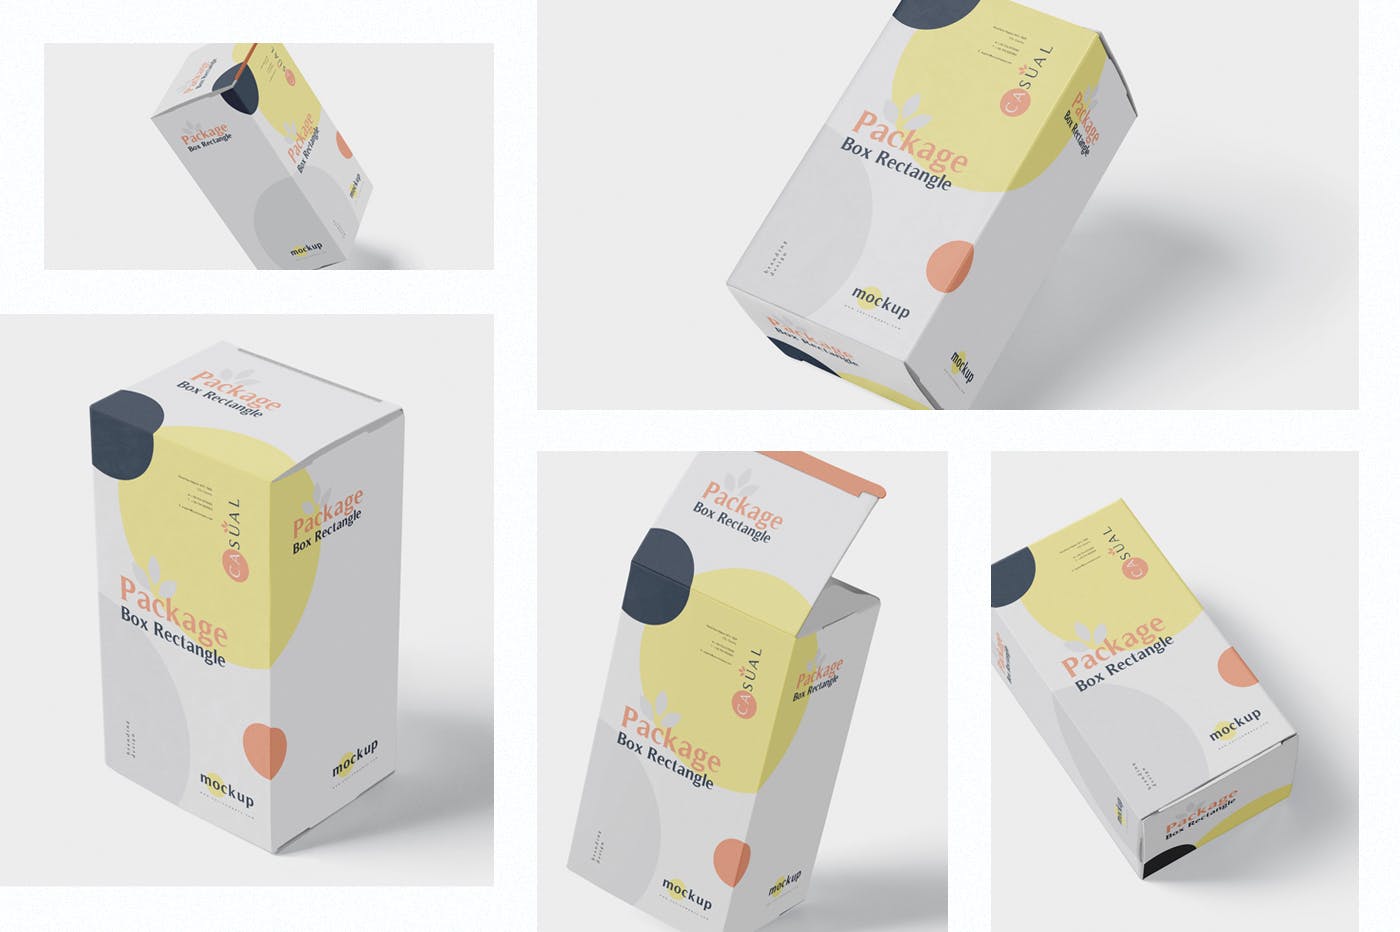 矩形产品包装盒外观设计效果图样机 Package Box Mock-Up – Rectangle插图(1)